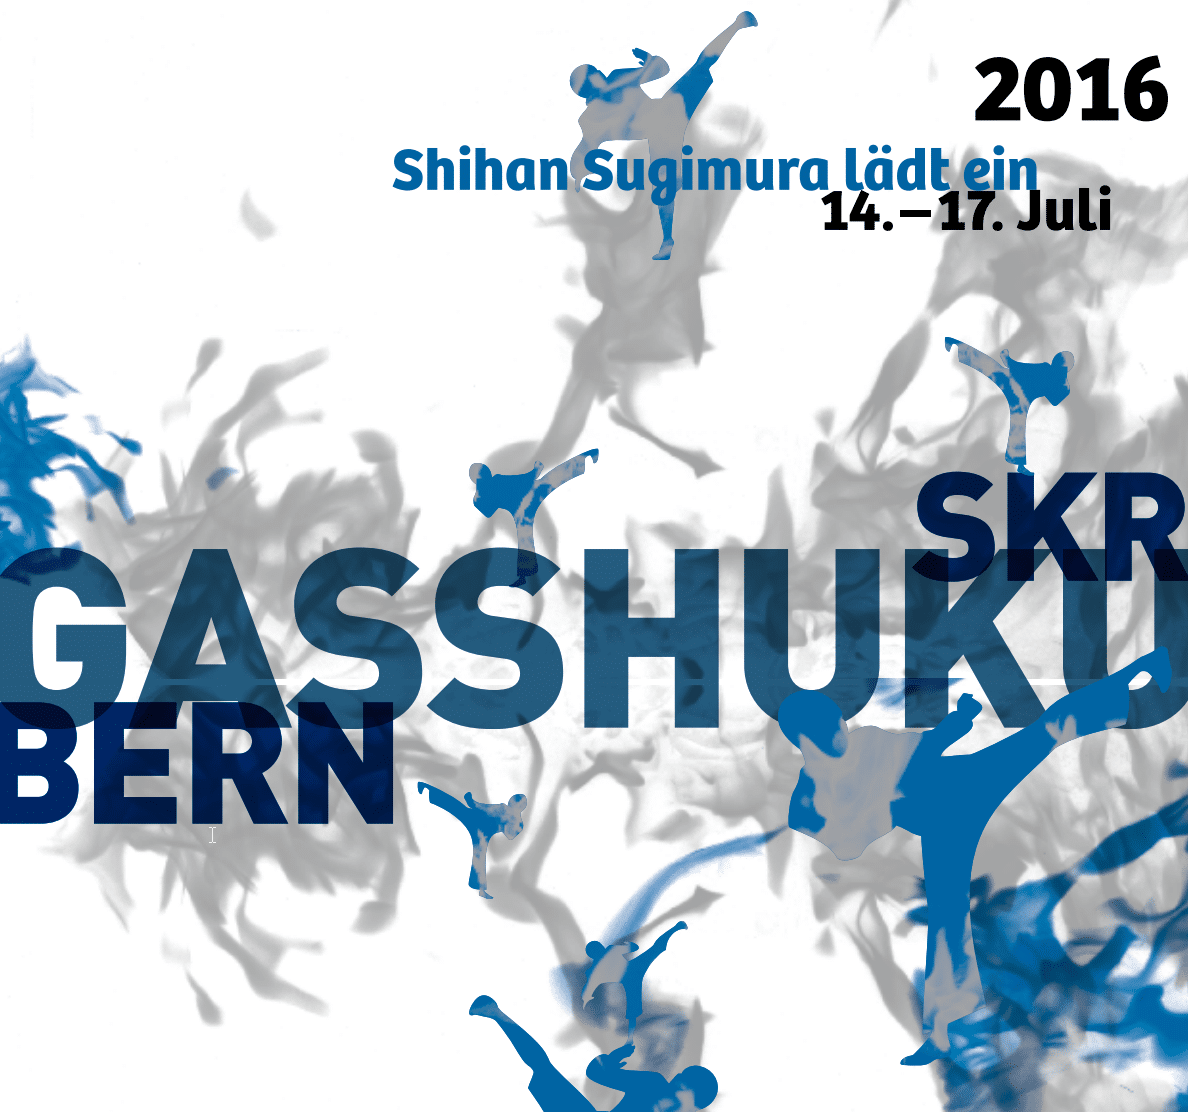 Karatekai Basel - SKR Gasshuku 14. – 17. Juli 2016 in Bern